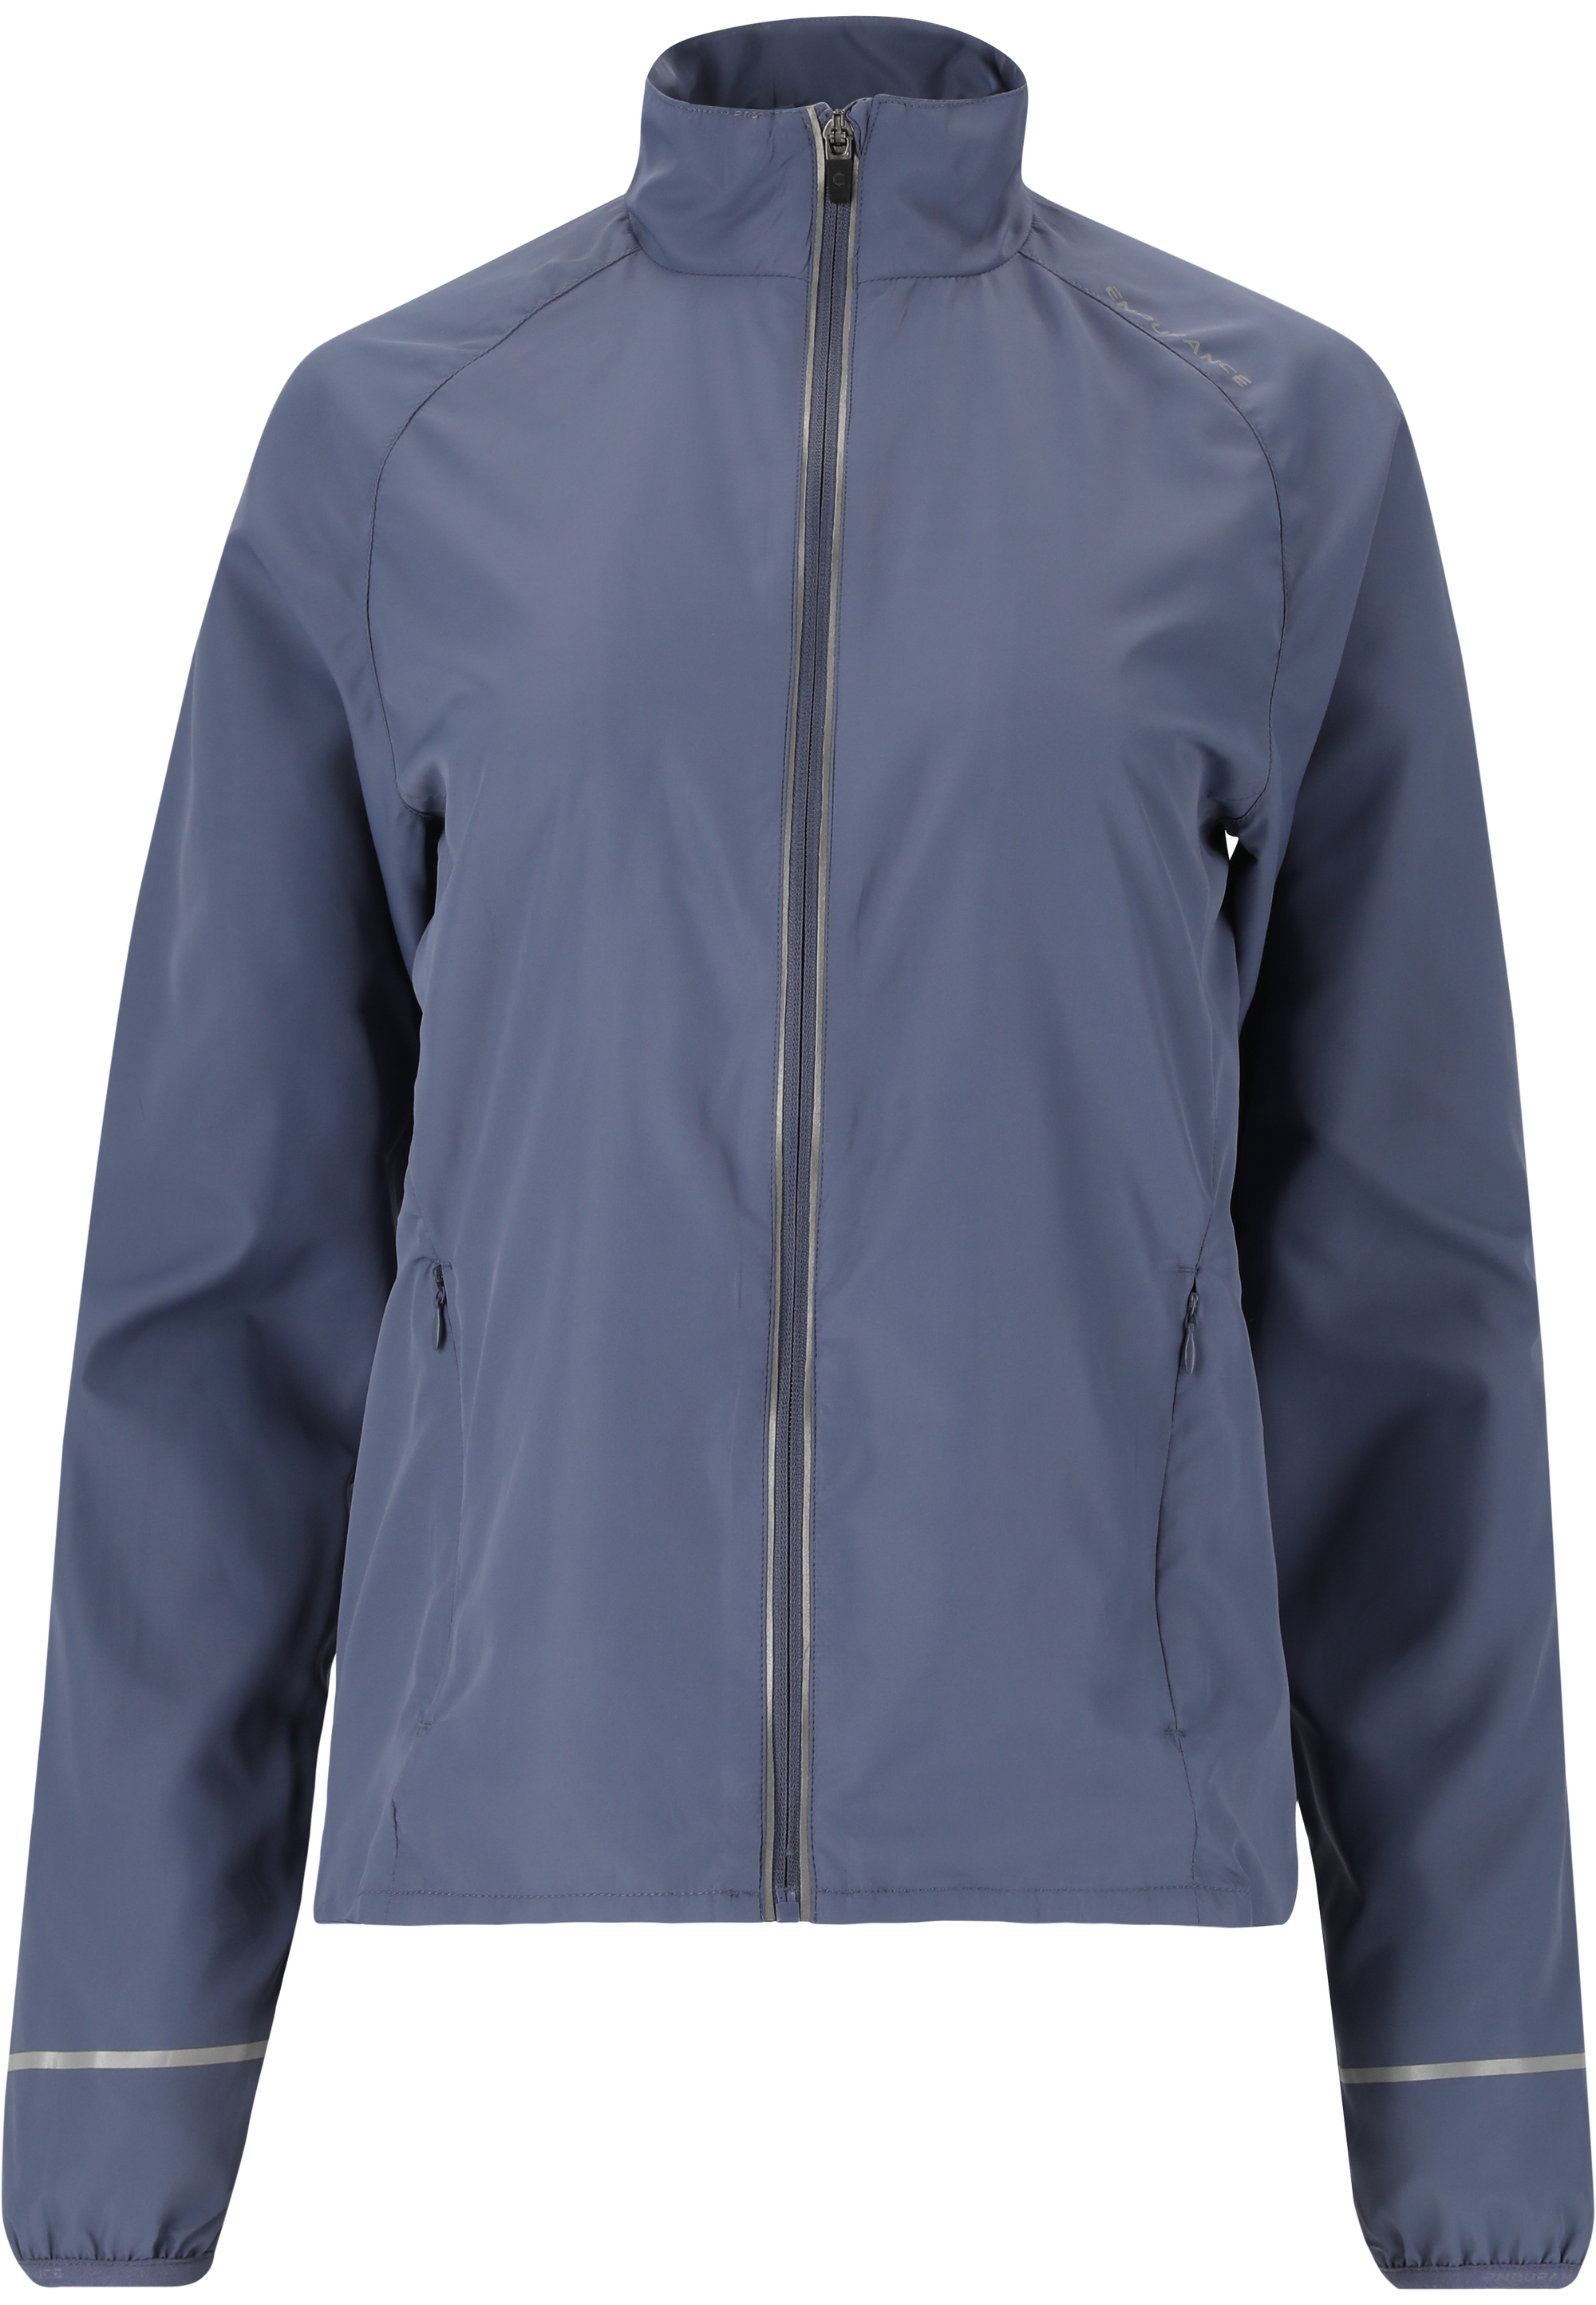 Спортивная куртка Endurance Shela, цвет 2177 Serenity Blue беговая куртка endurance shela цвет braun